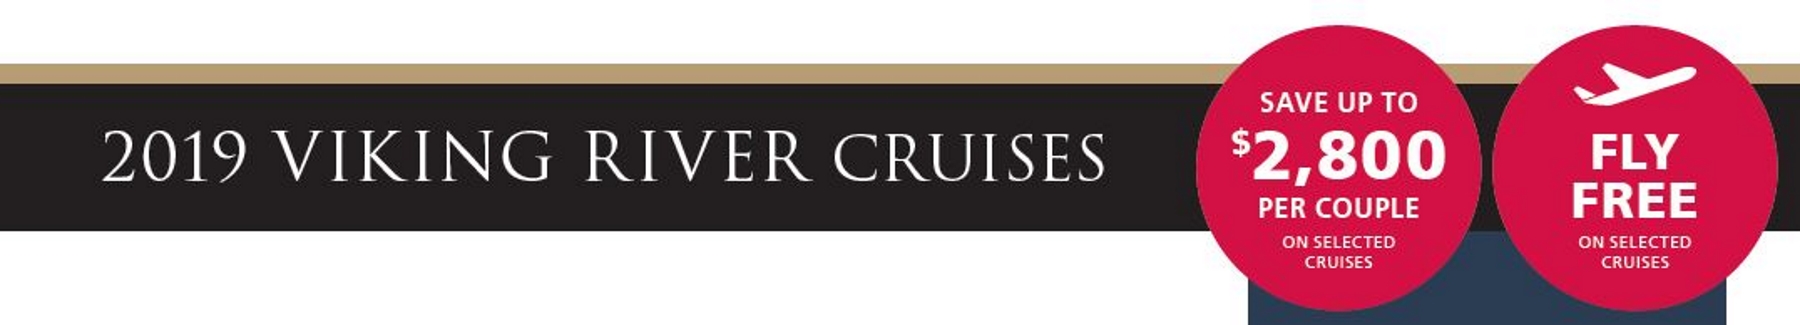 2019-Viking-River-Cruises